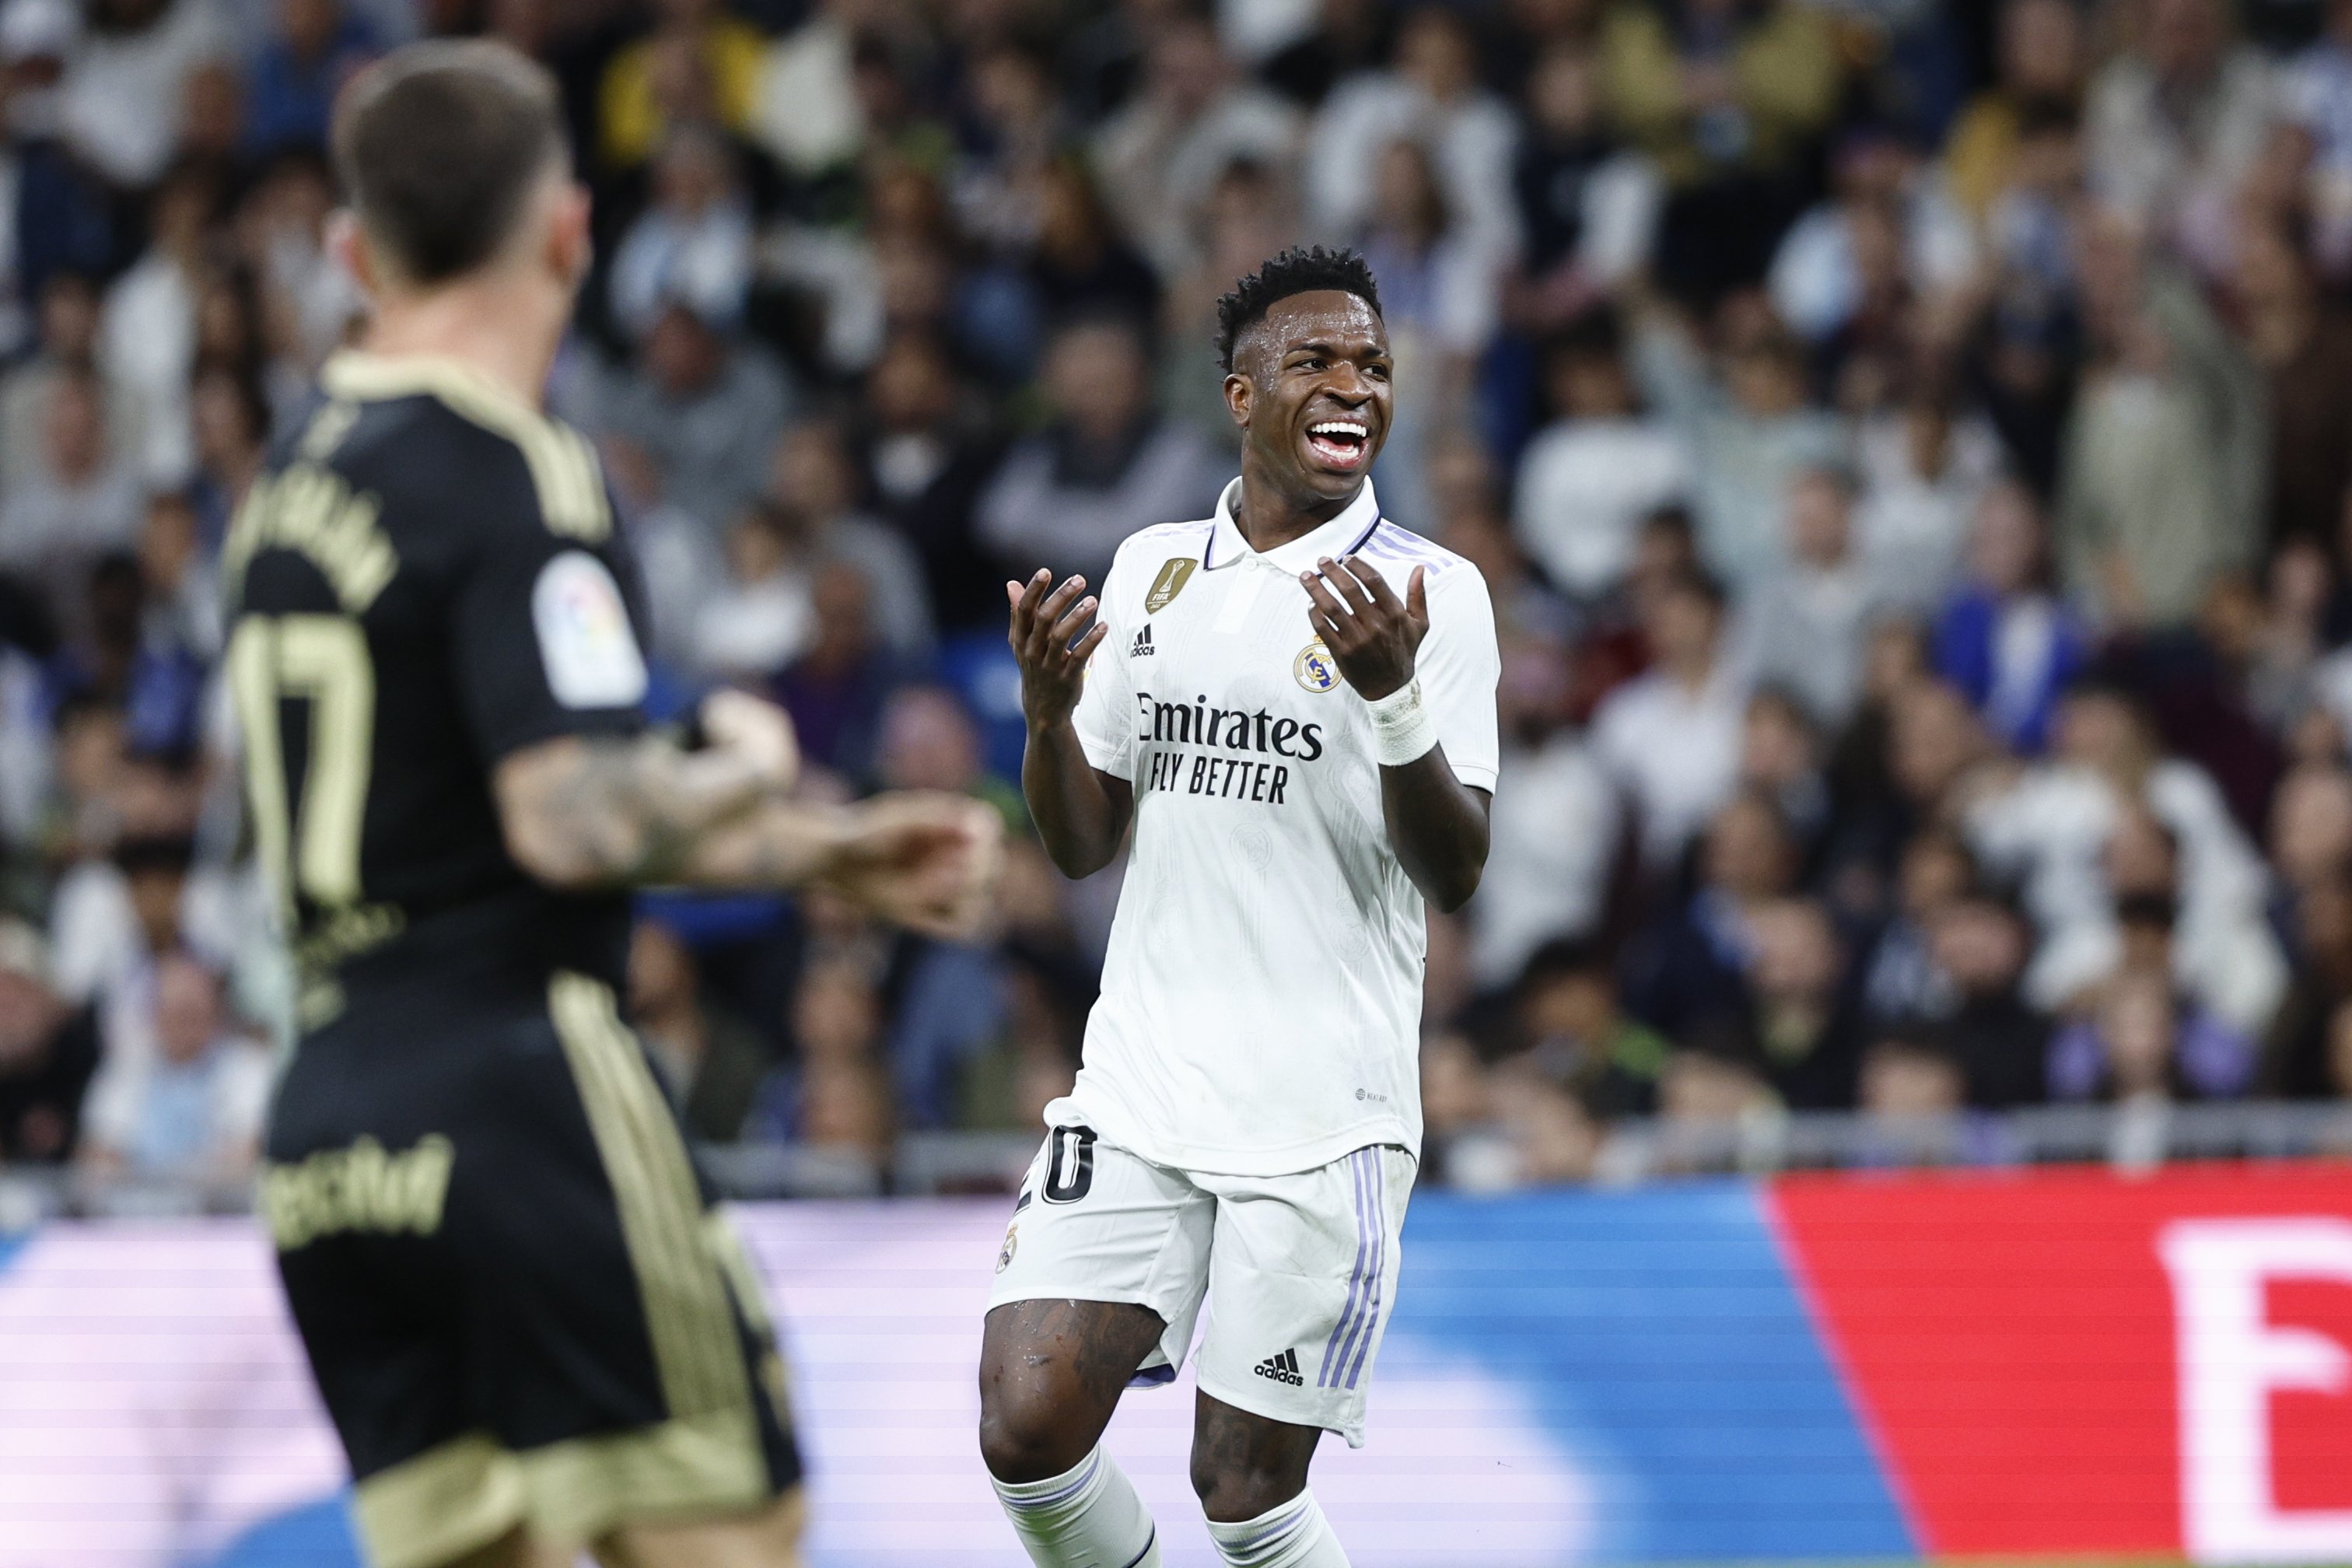 Adiós doloroso para Vinícius, la llegada de Mbappé precipita la marcha del Real Madrid, oferta